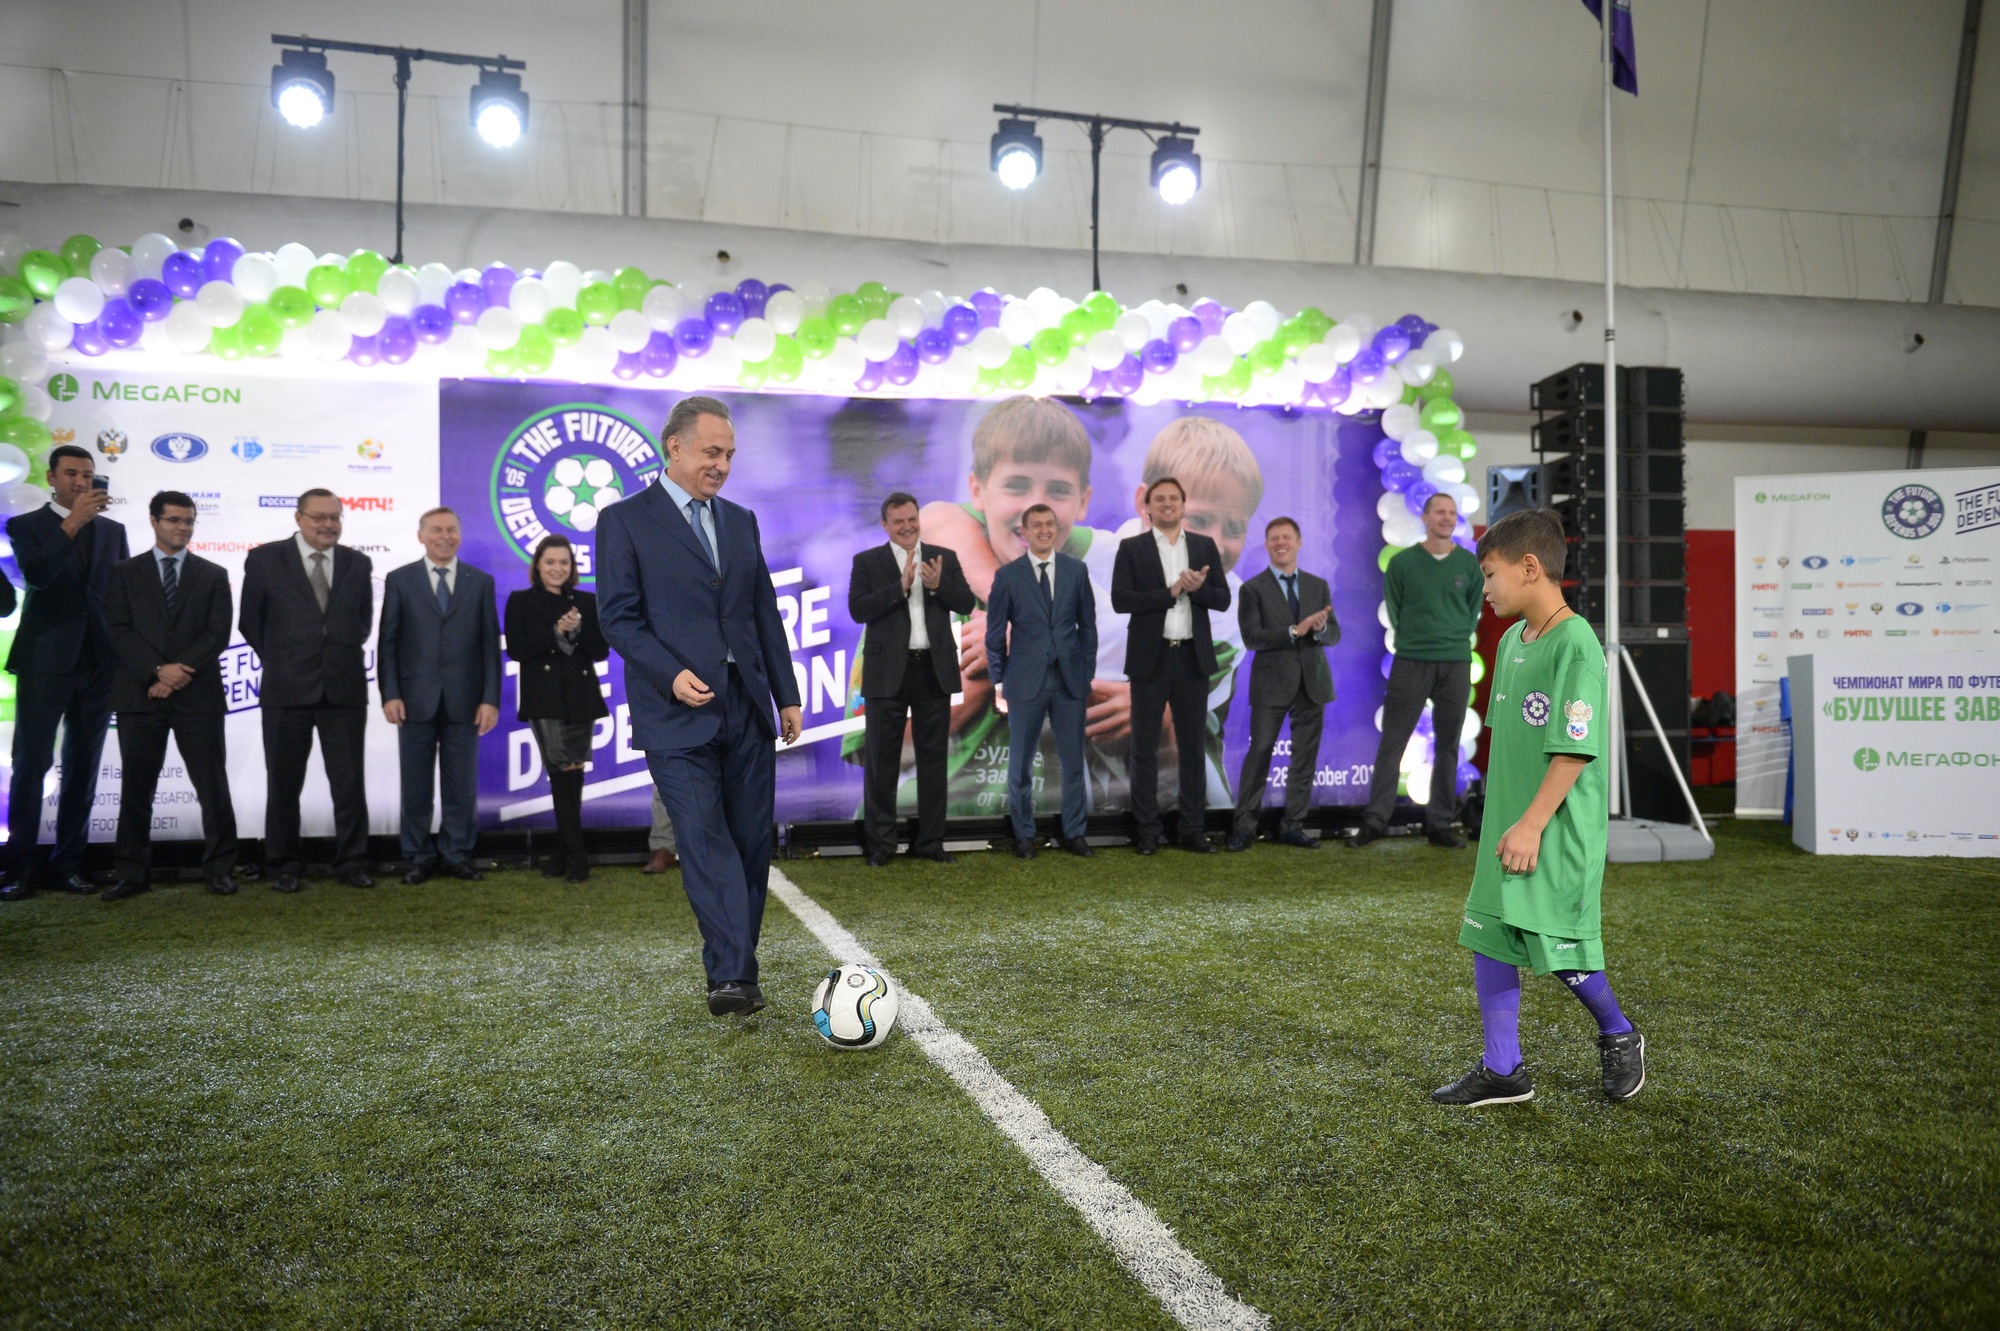 Наше будущее турнир по футболу. Футбол в будущем. Будущее зависит от тебя футбол для детей сирот Азов 2014-2017. Проект больше чем футбол для сирот.